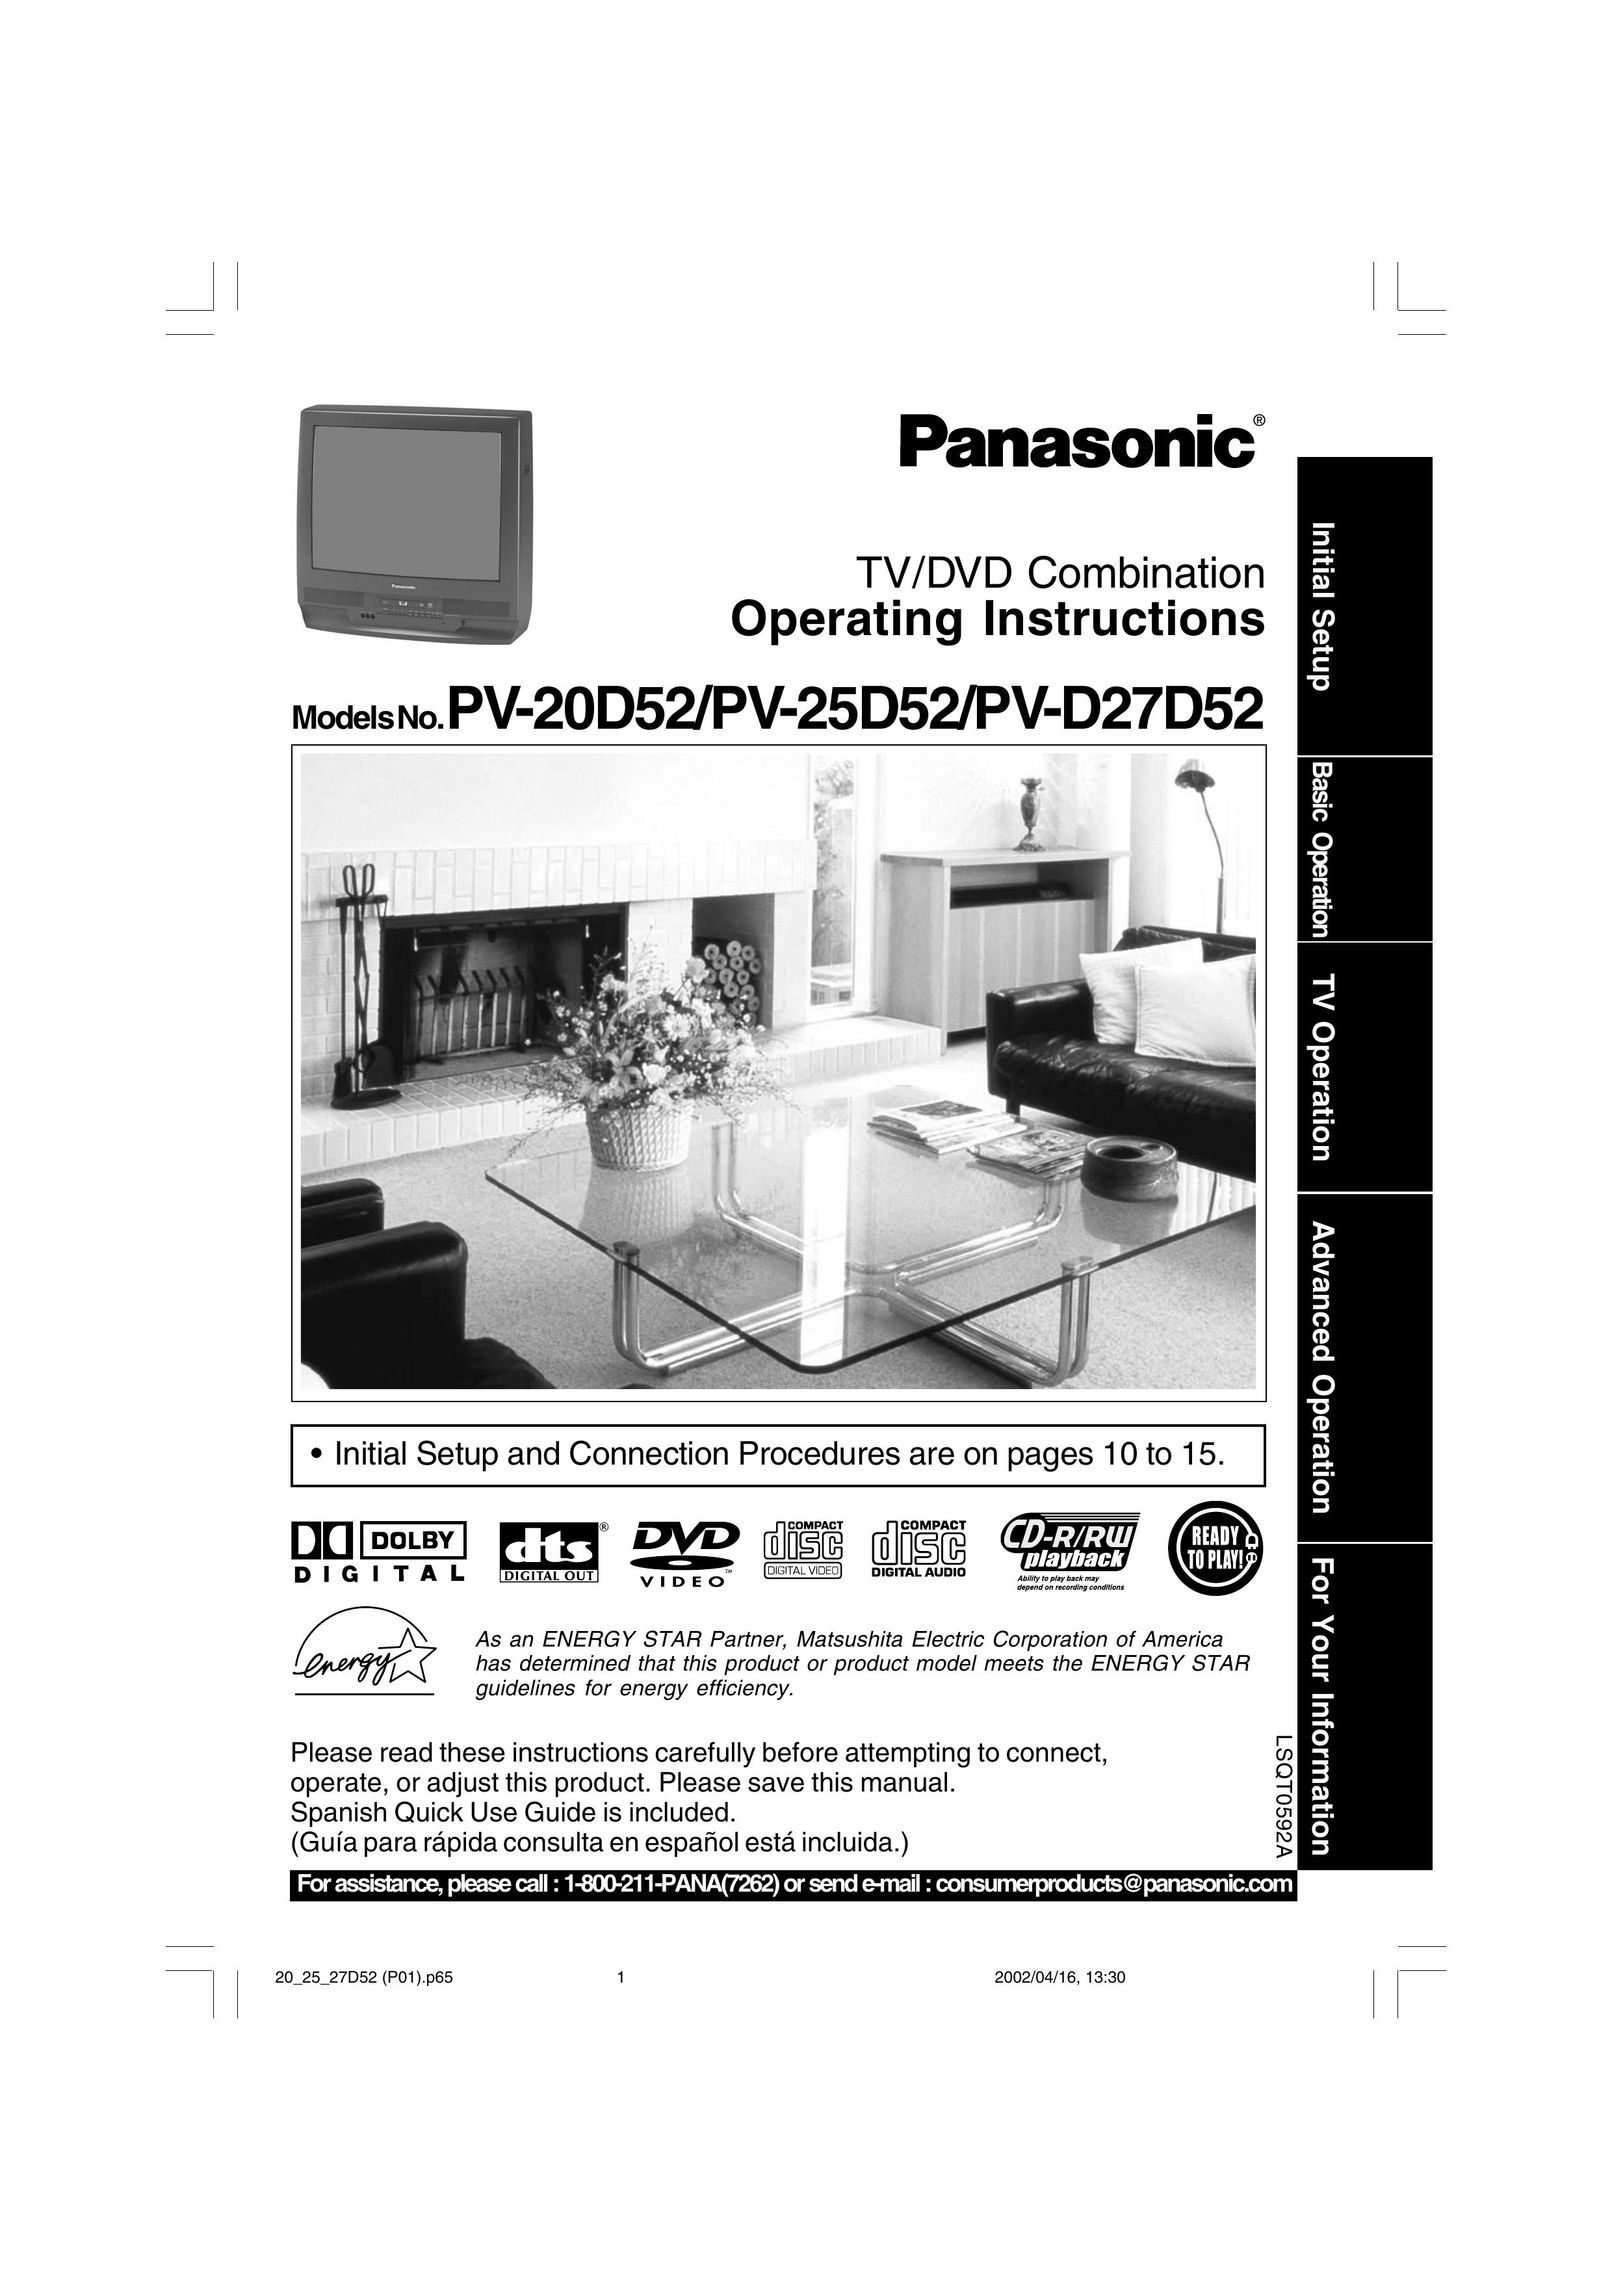 Panasonic PV 20D52 TV DVD Combo User Manual